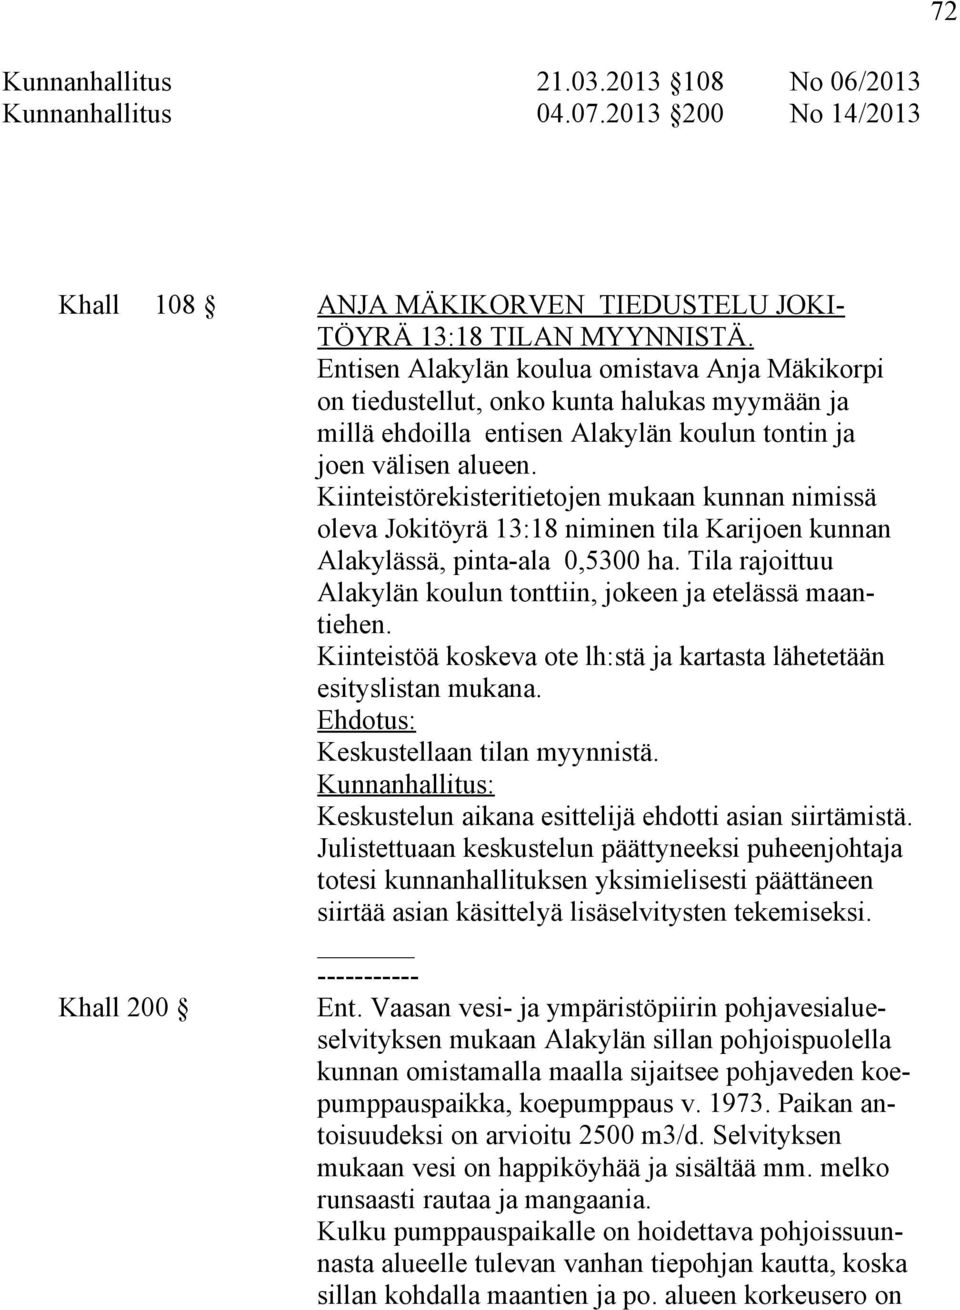 Kiinteistörekisteritietojen mukaan kunnan nimissä oleva Jokitöyrä 13:18 niminen tila Karijoen kunnan Alakylässä, pinta-ala 0,5300 ha.